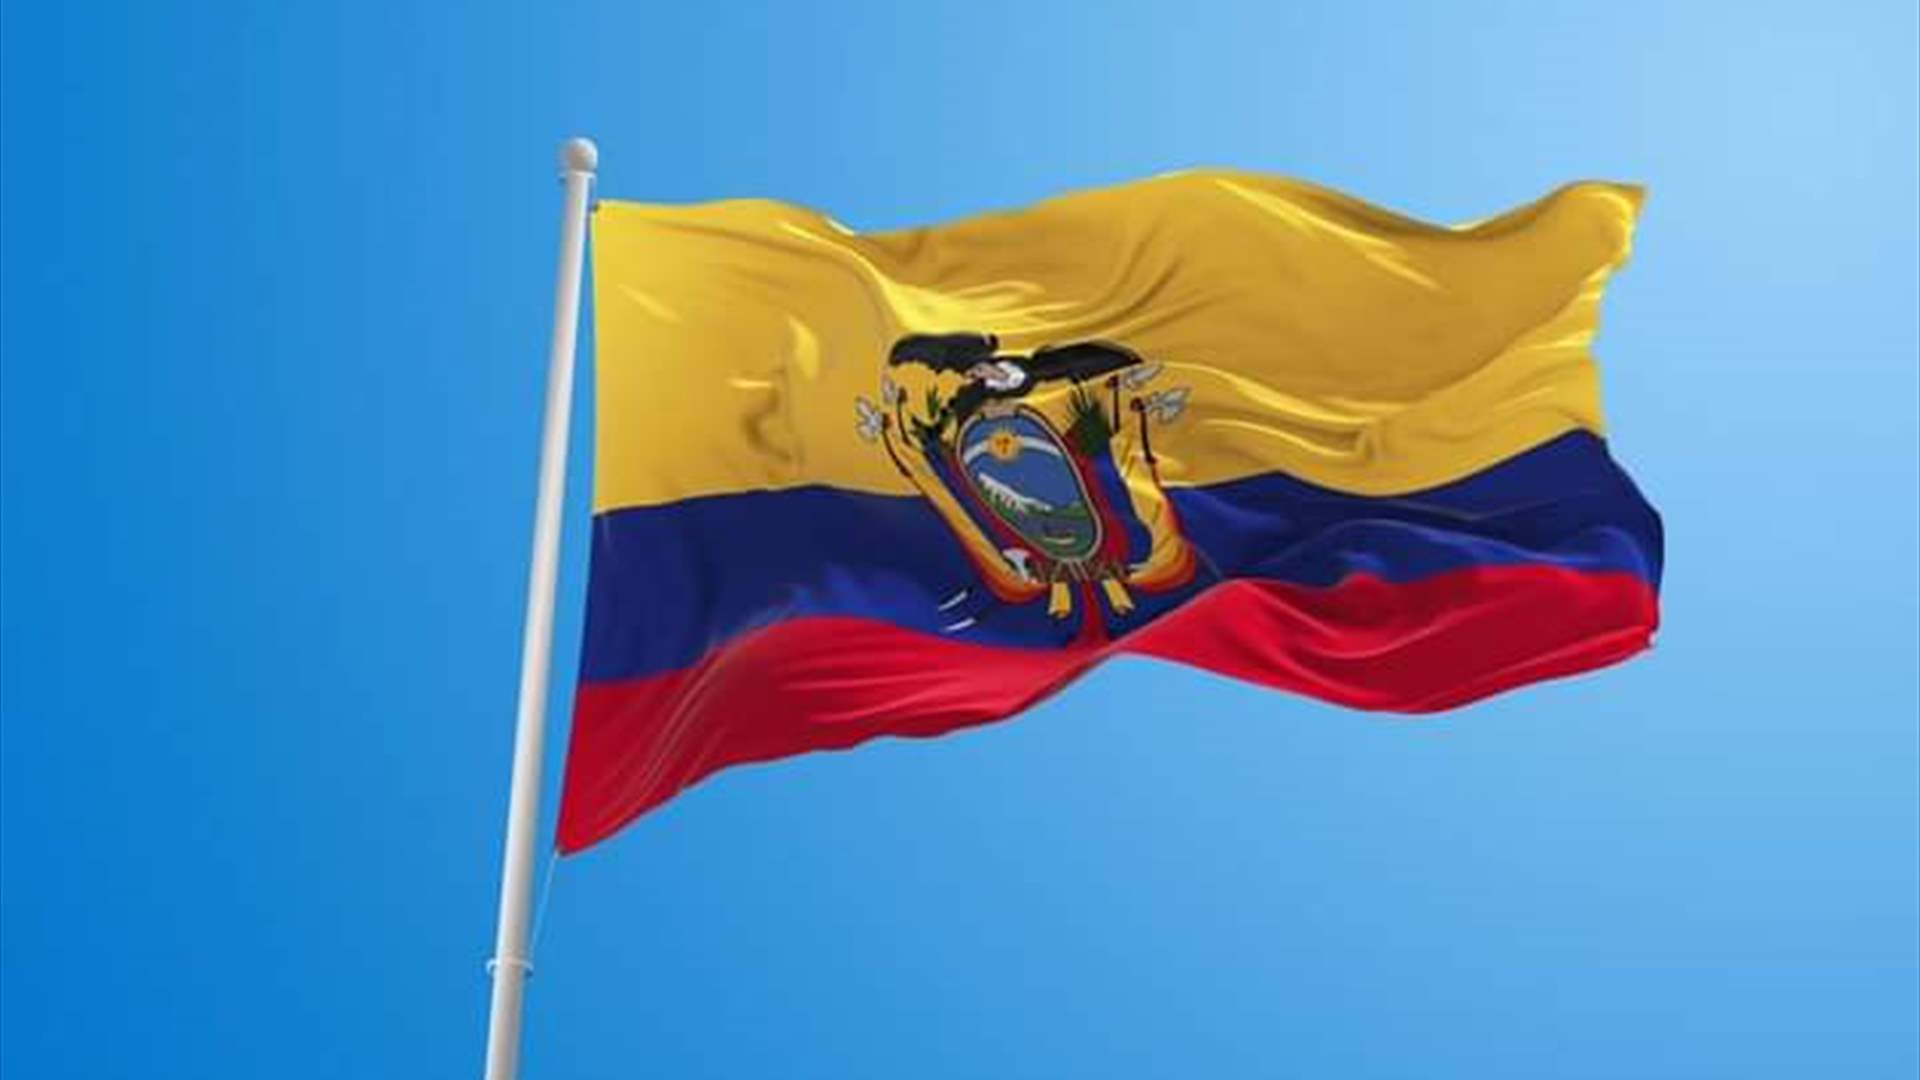 ستة قتلى بهجوم مسلح في مدينة سياحية في الإكوادور